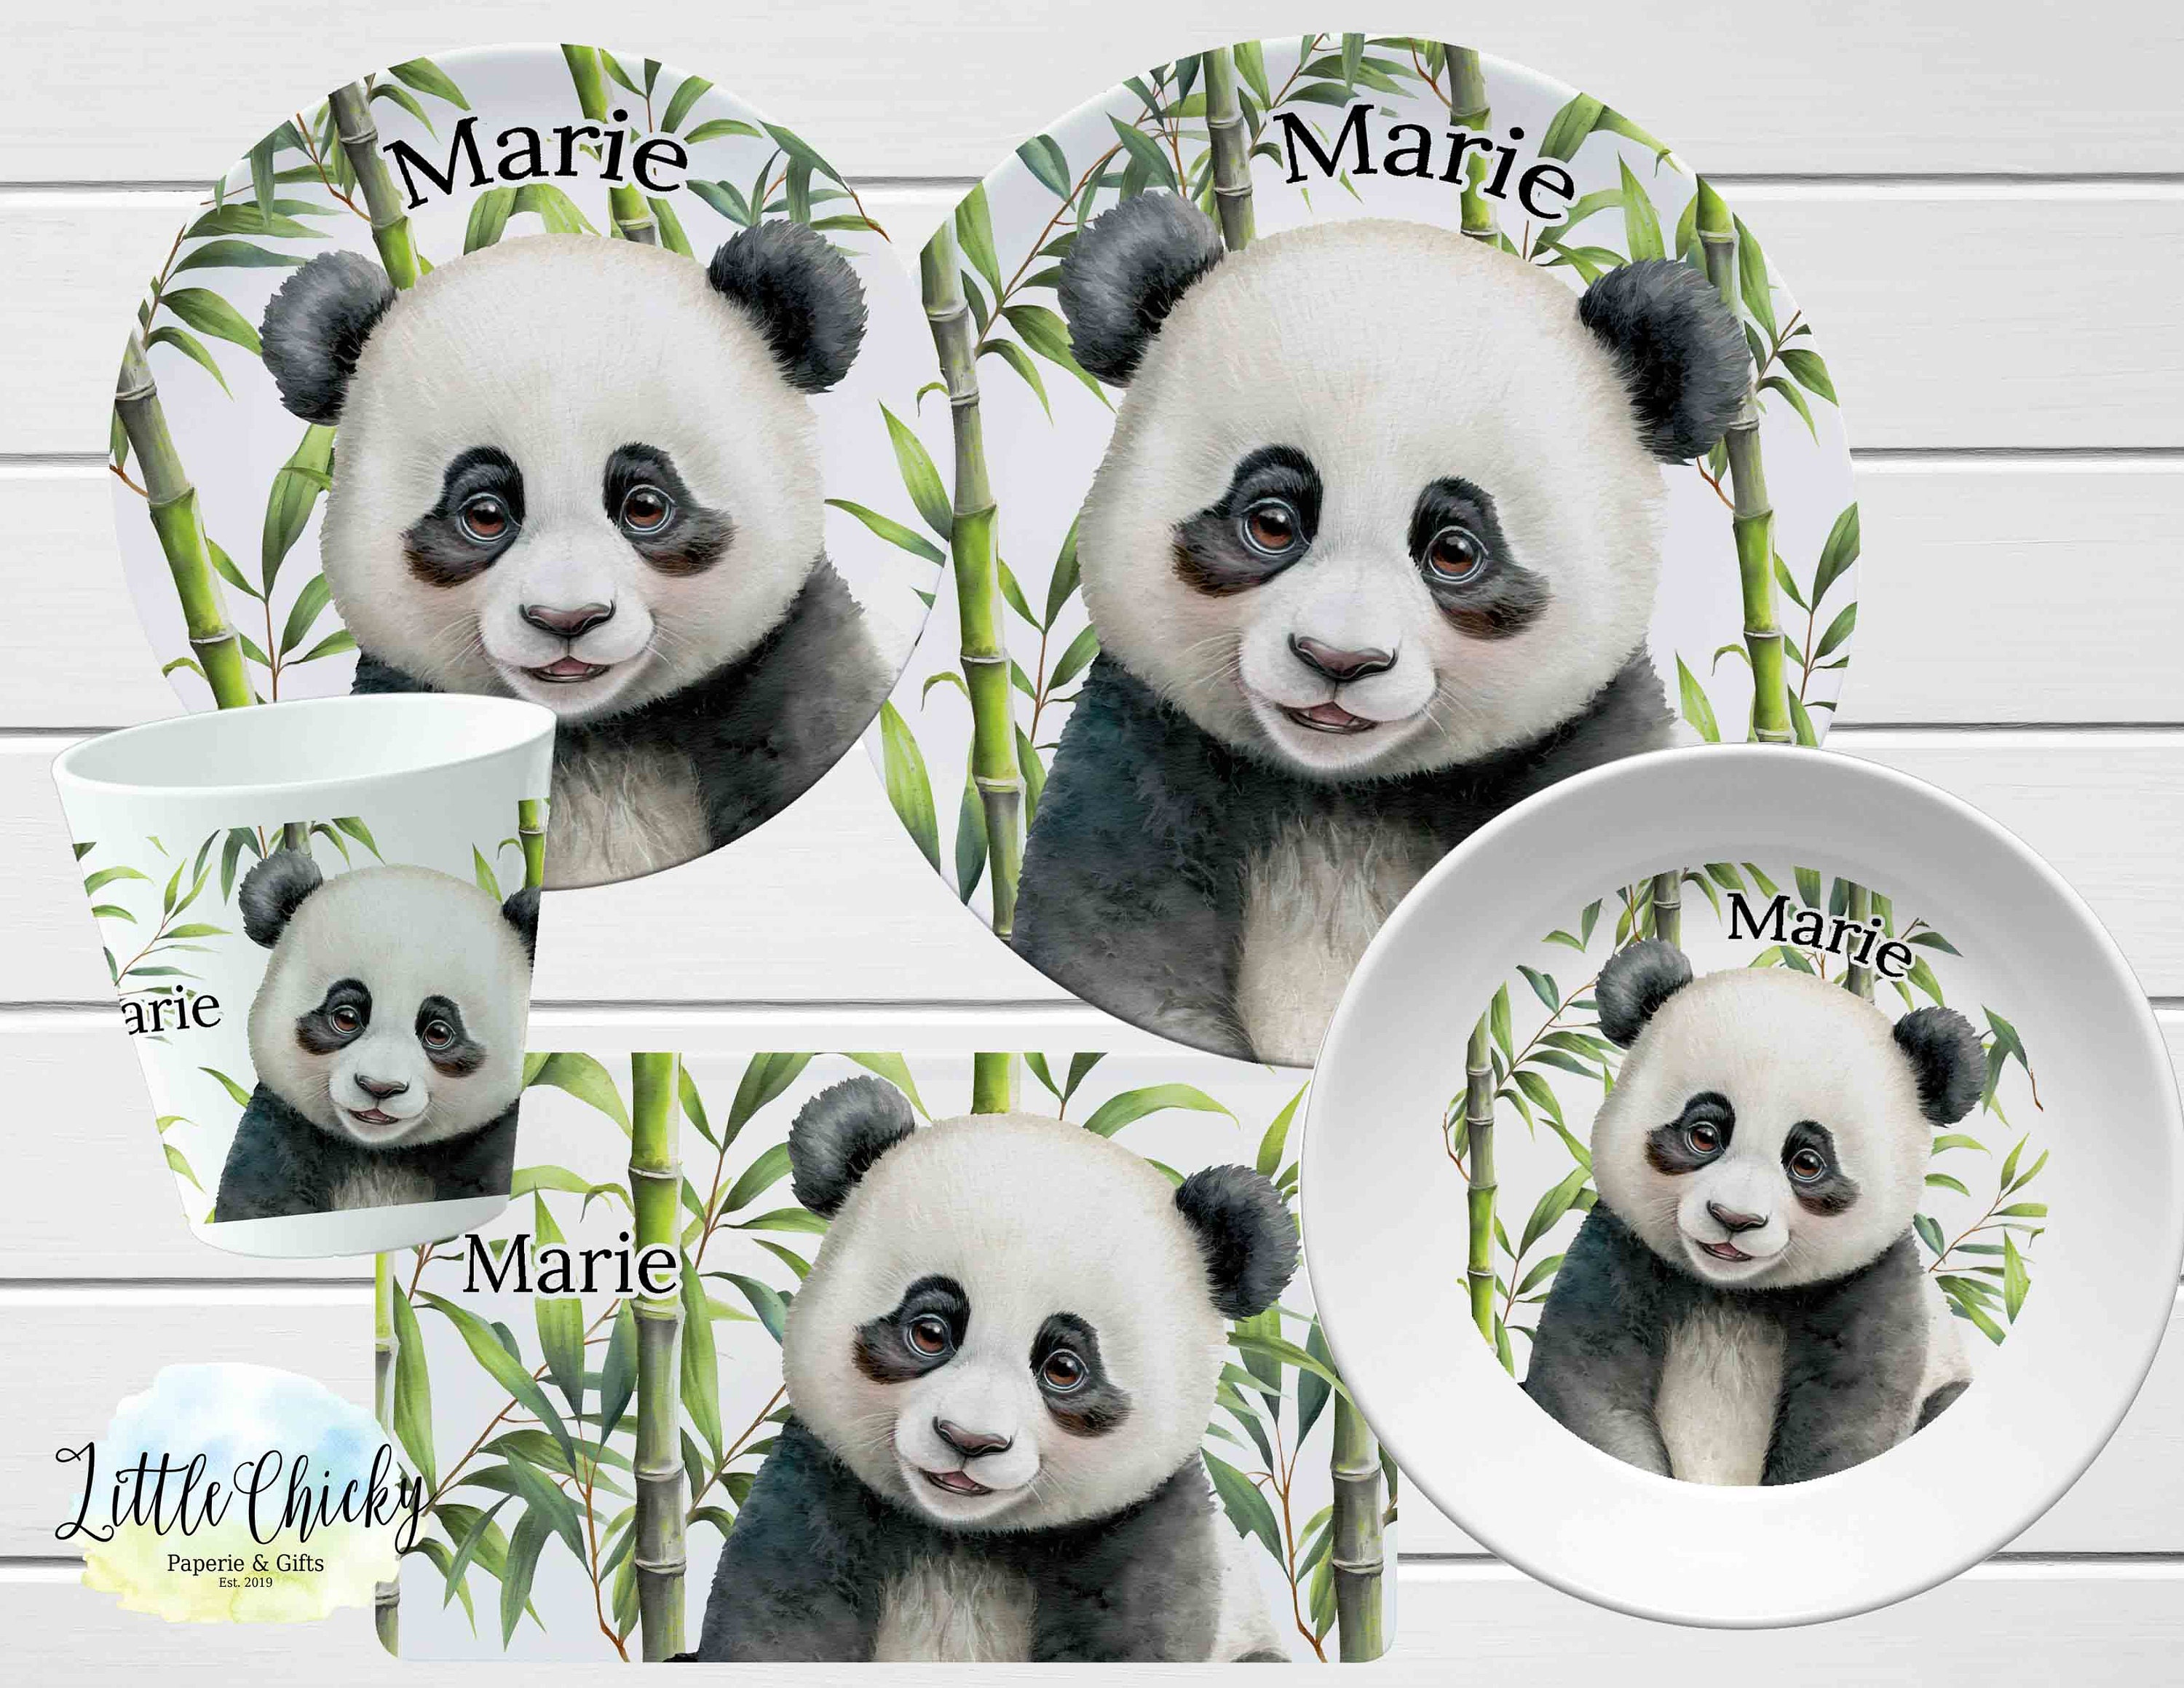 Ensemble De Vaisselle Pour Enfants 4 Pièces Ustensiles Et Assiettes Pour  Tout-petits Assiette En Forme De Panda 